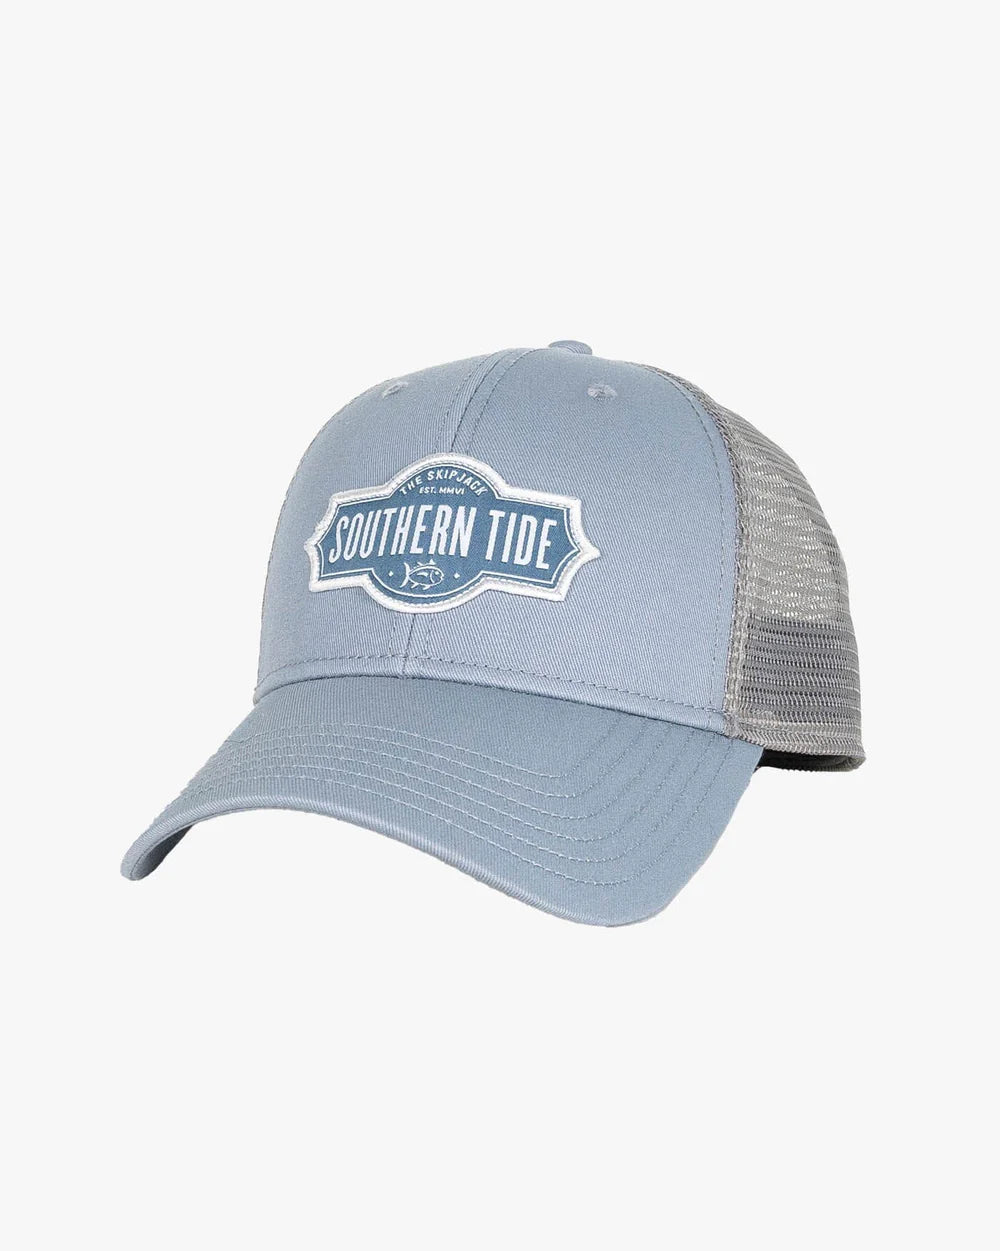 Southern Tide Badge Trucker Hat